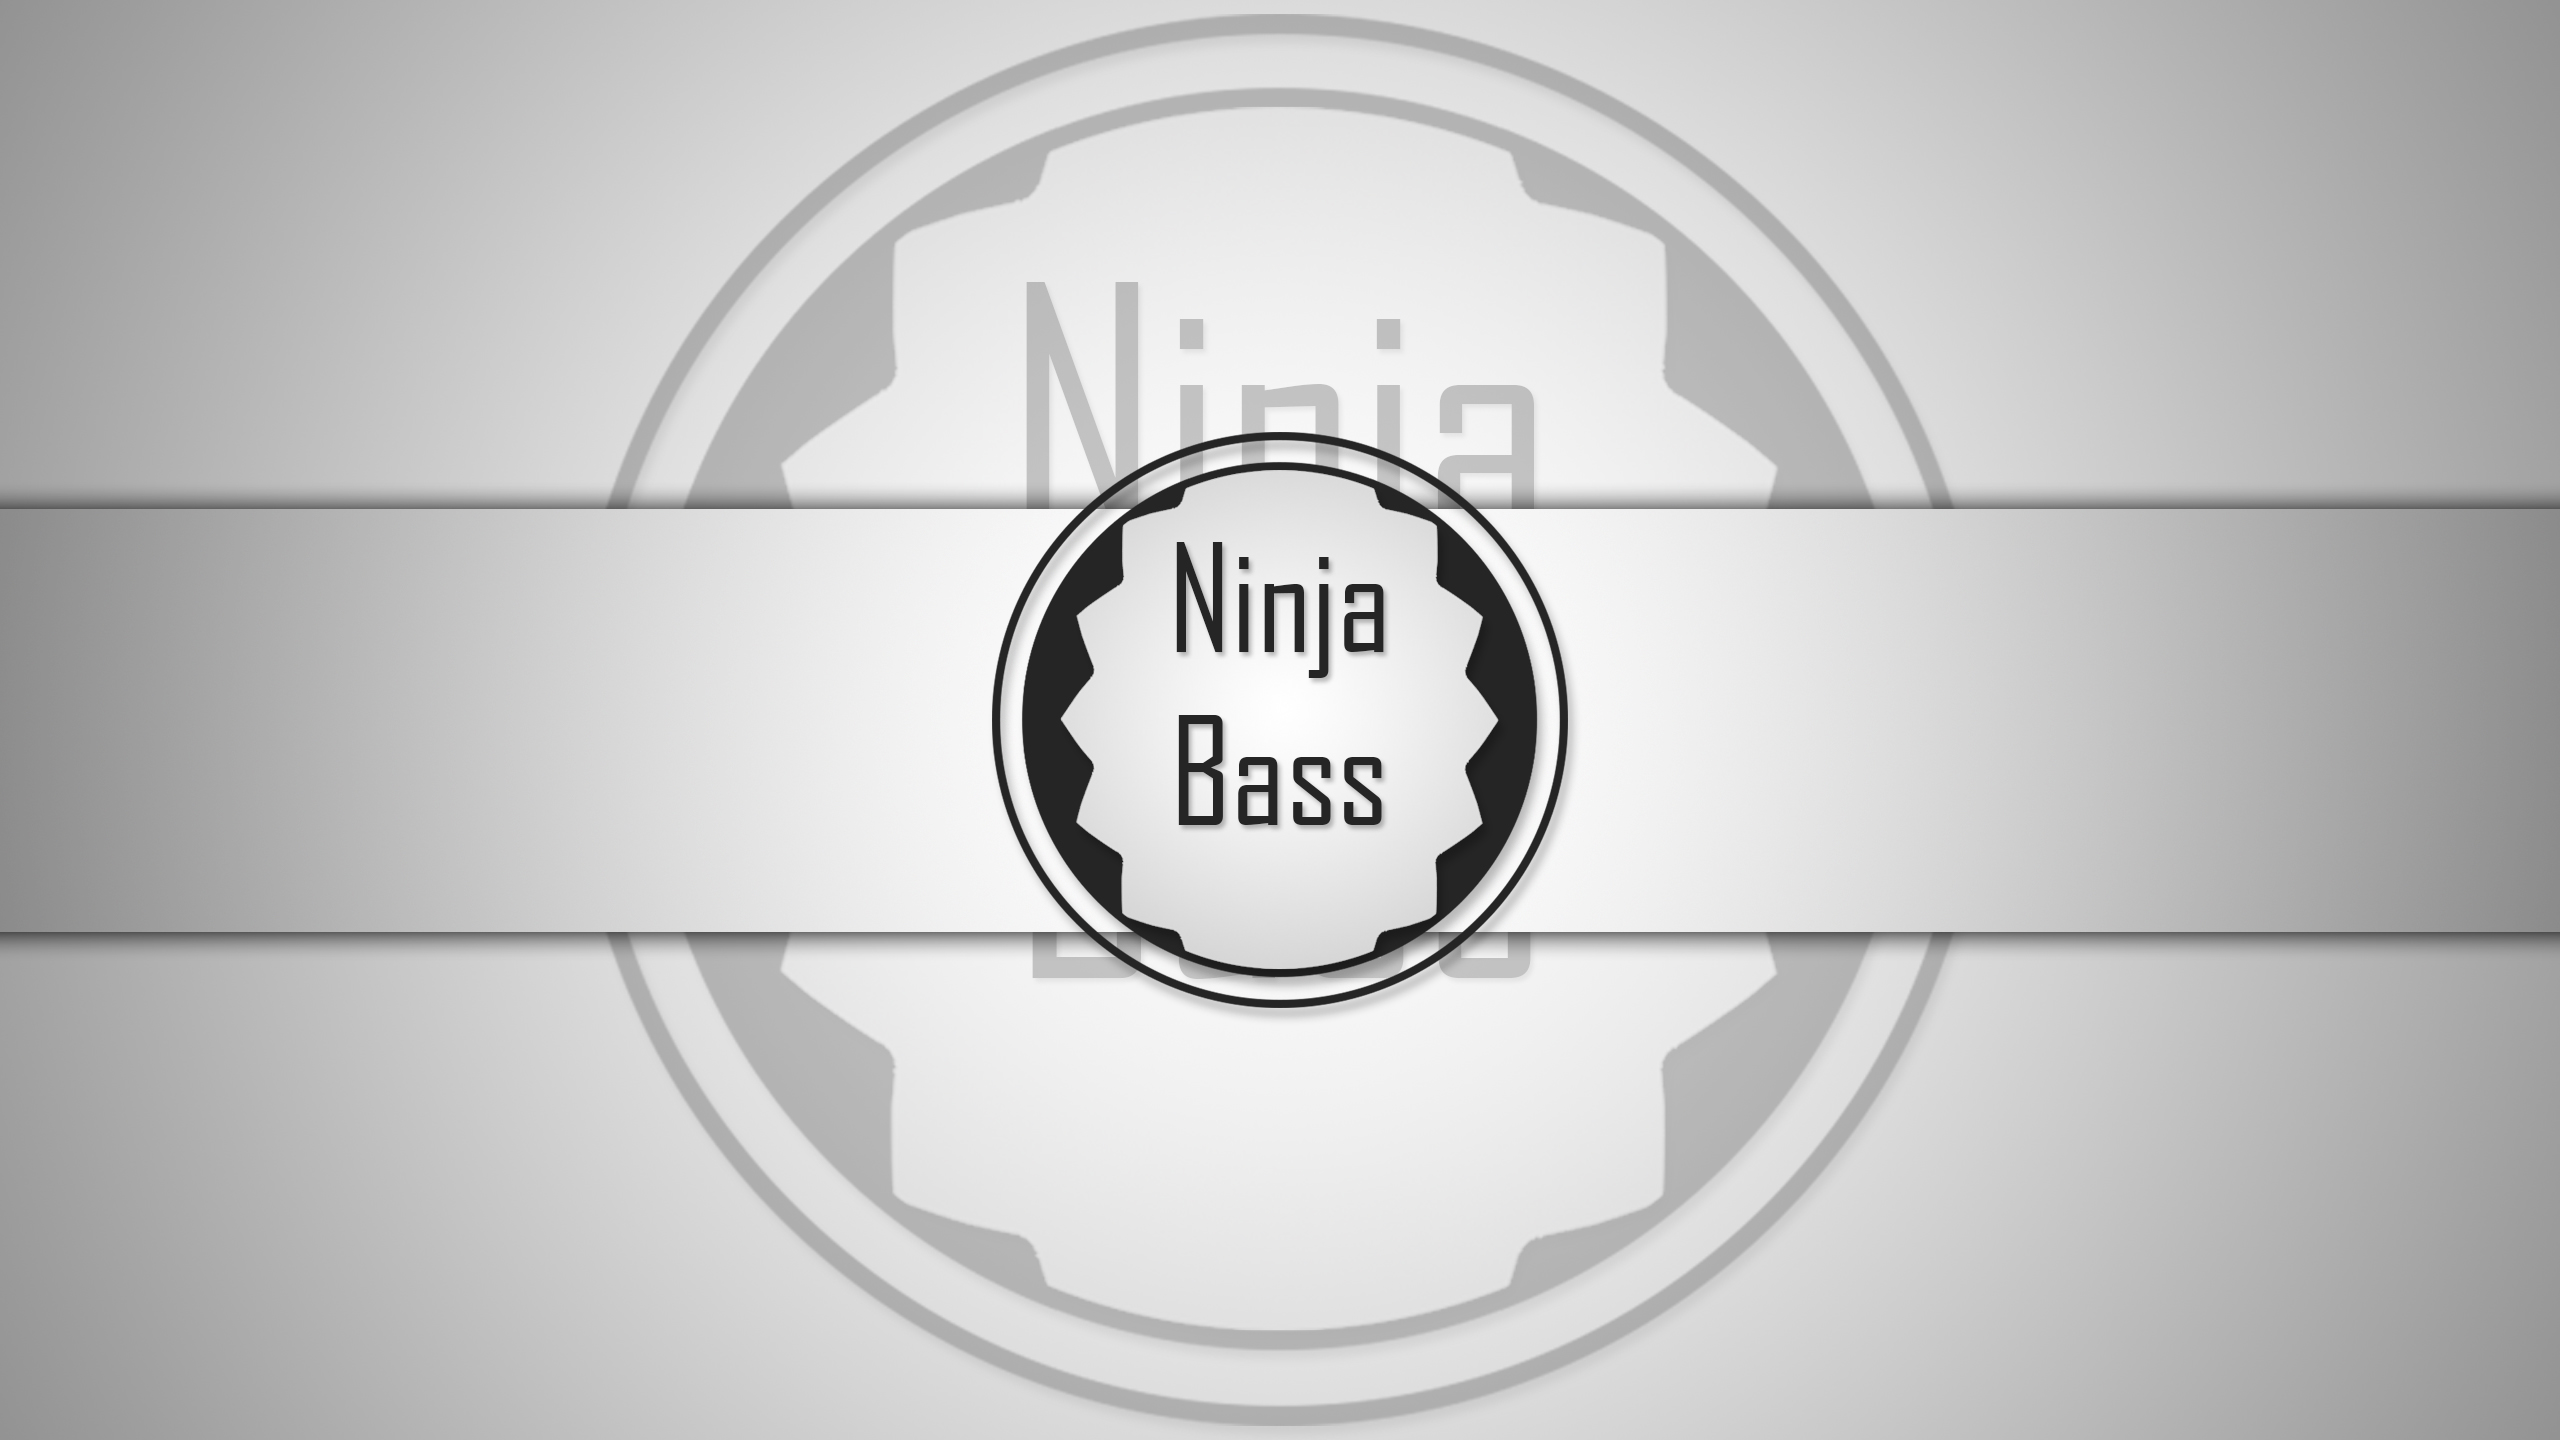 Design Ninja Ninja Bass Saiverx Saiverxdesigns 2560x1440